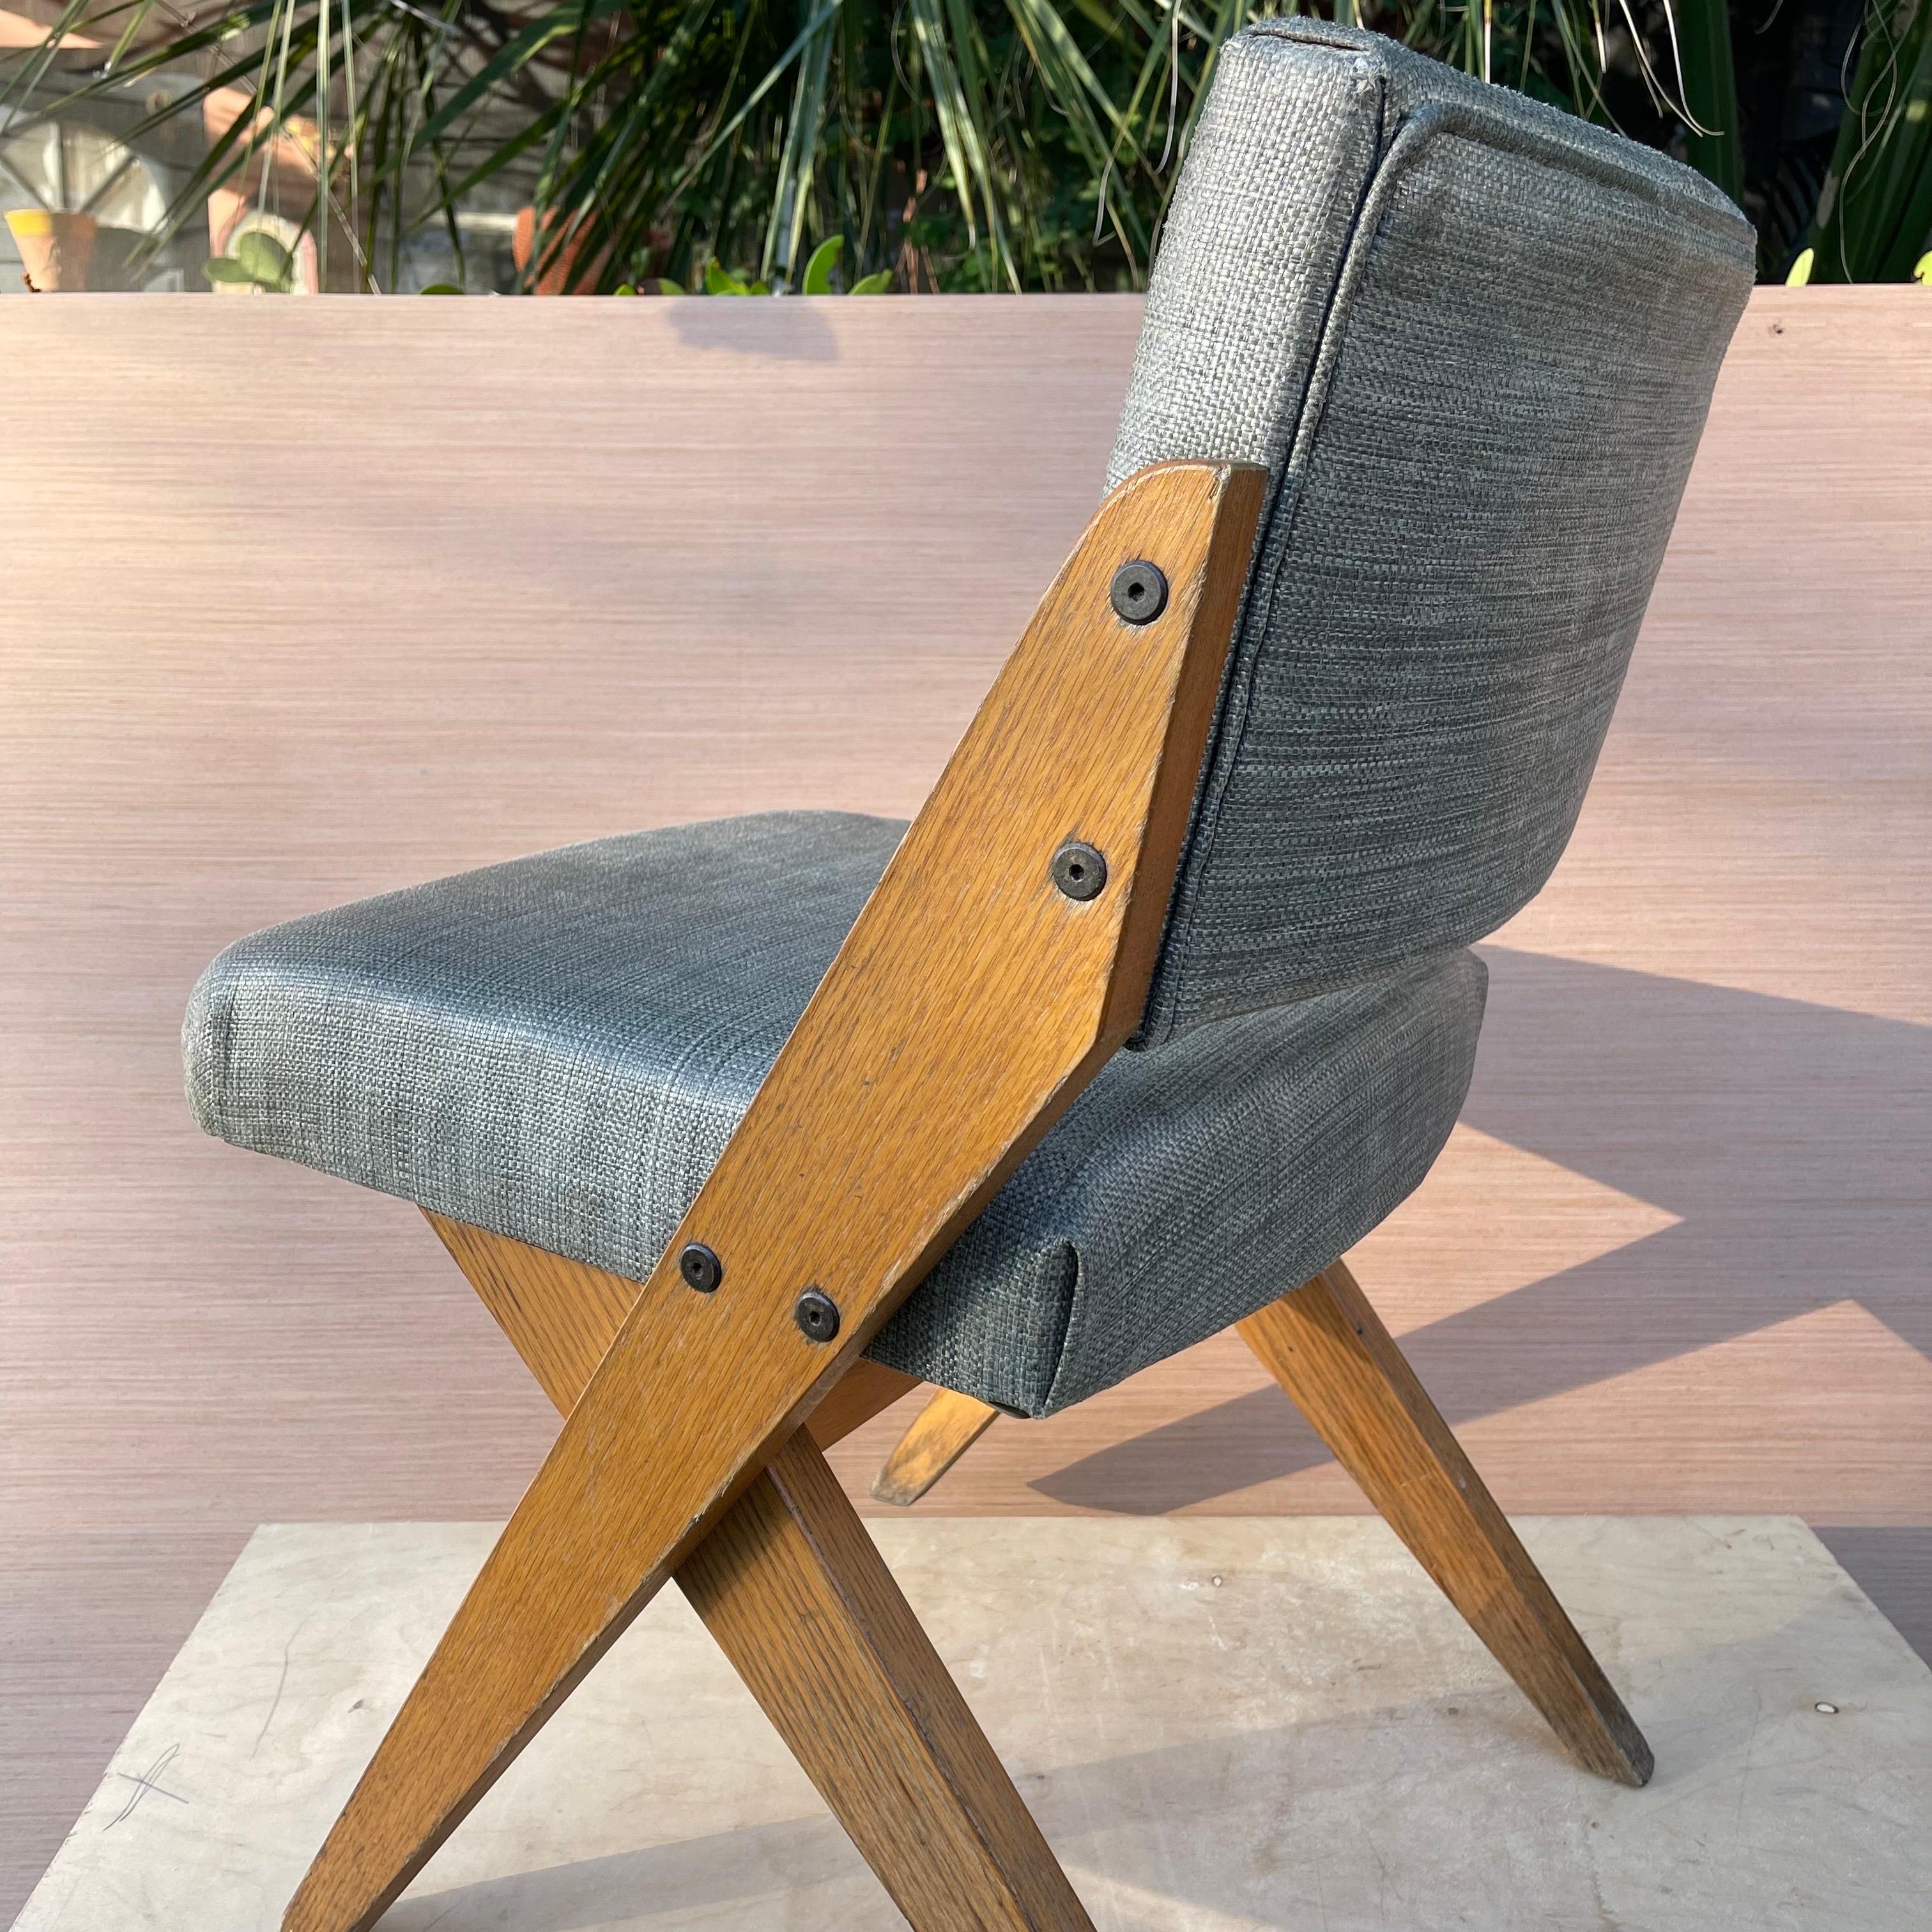 Scherenstuhl aus Eichenholz in der Art von Jose Zanine Caldas.

Mehrere verfügbar, siehe Fotos für Variation in der Farbe der Polsterung. 